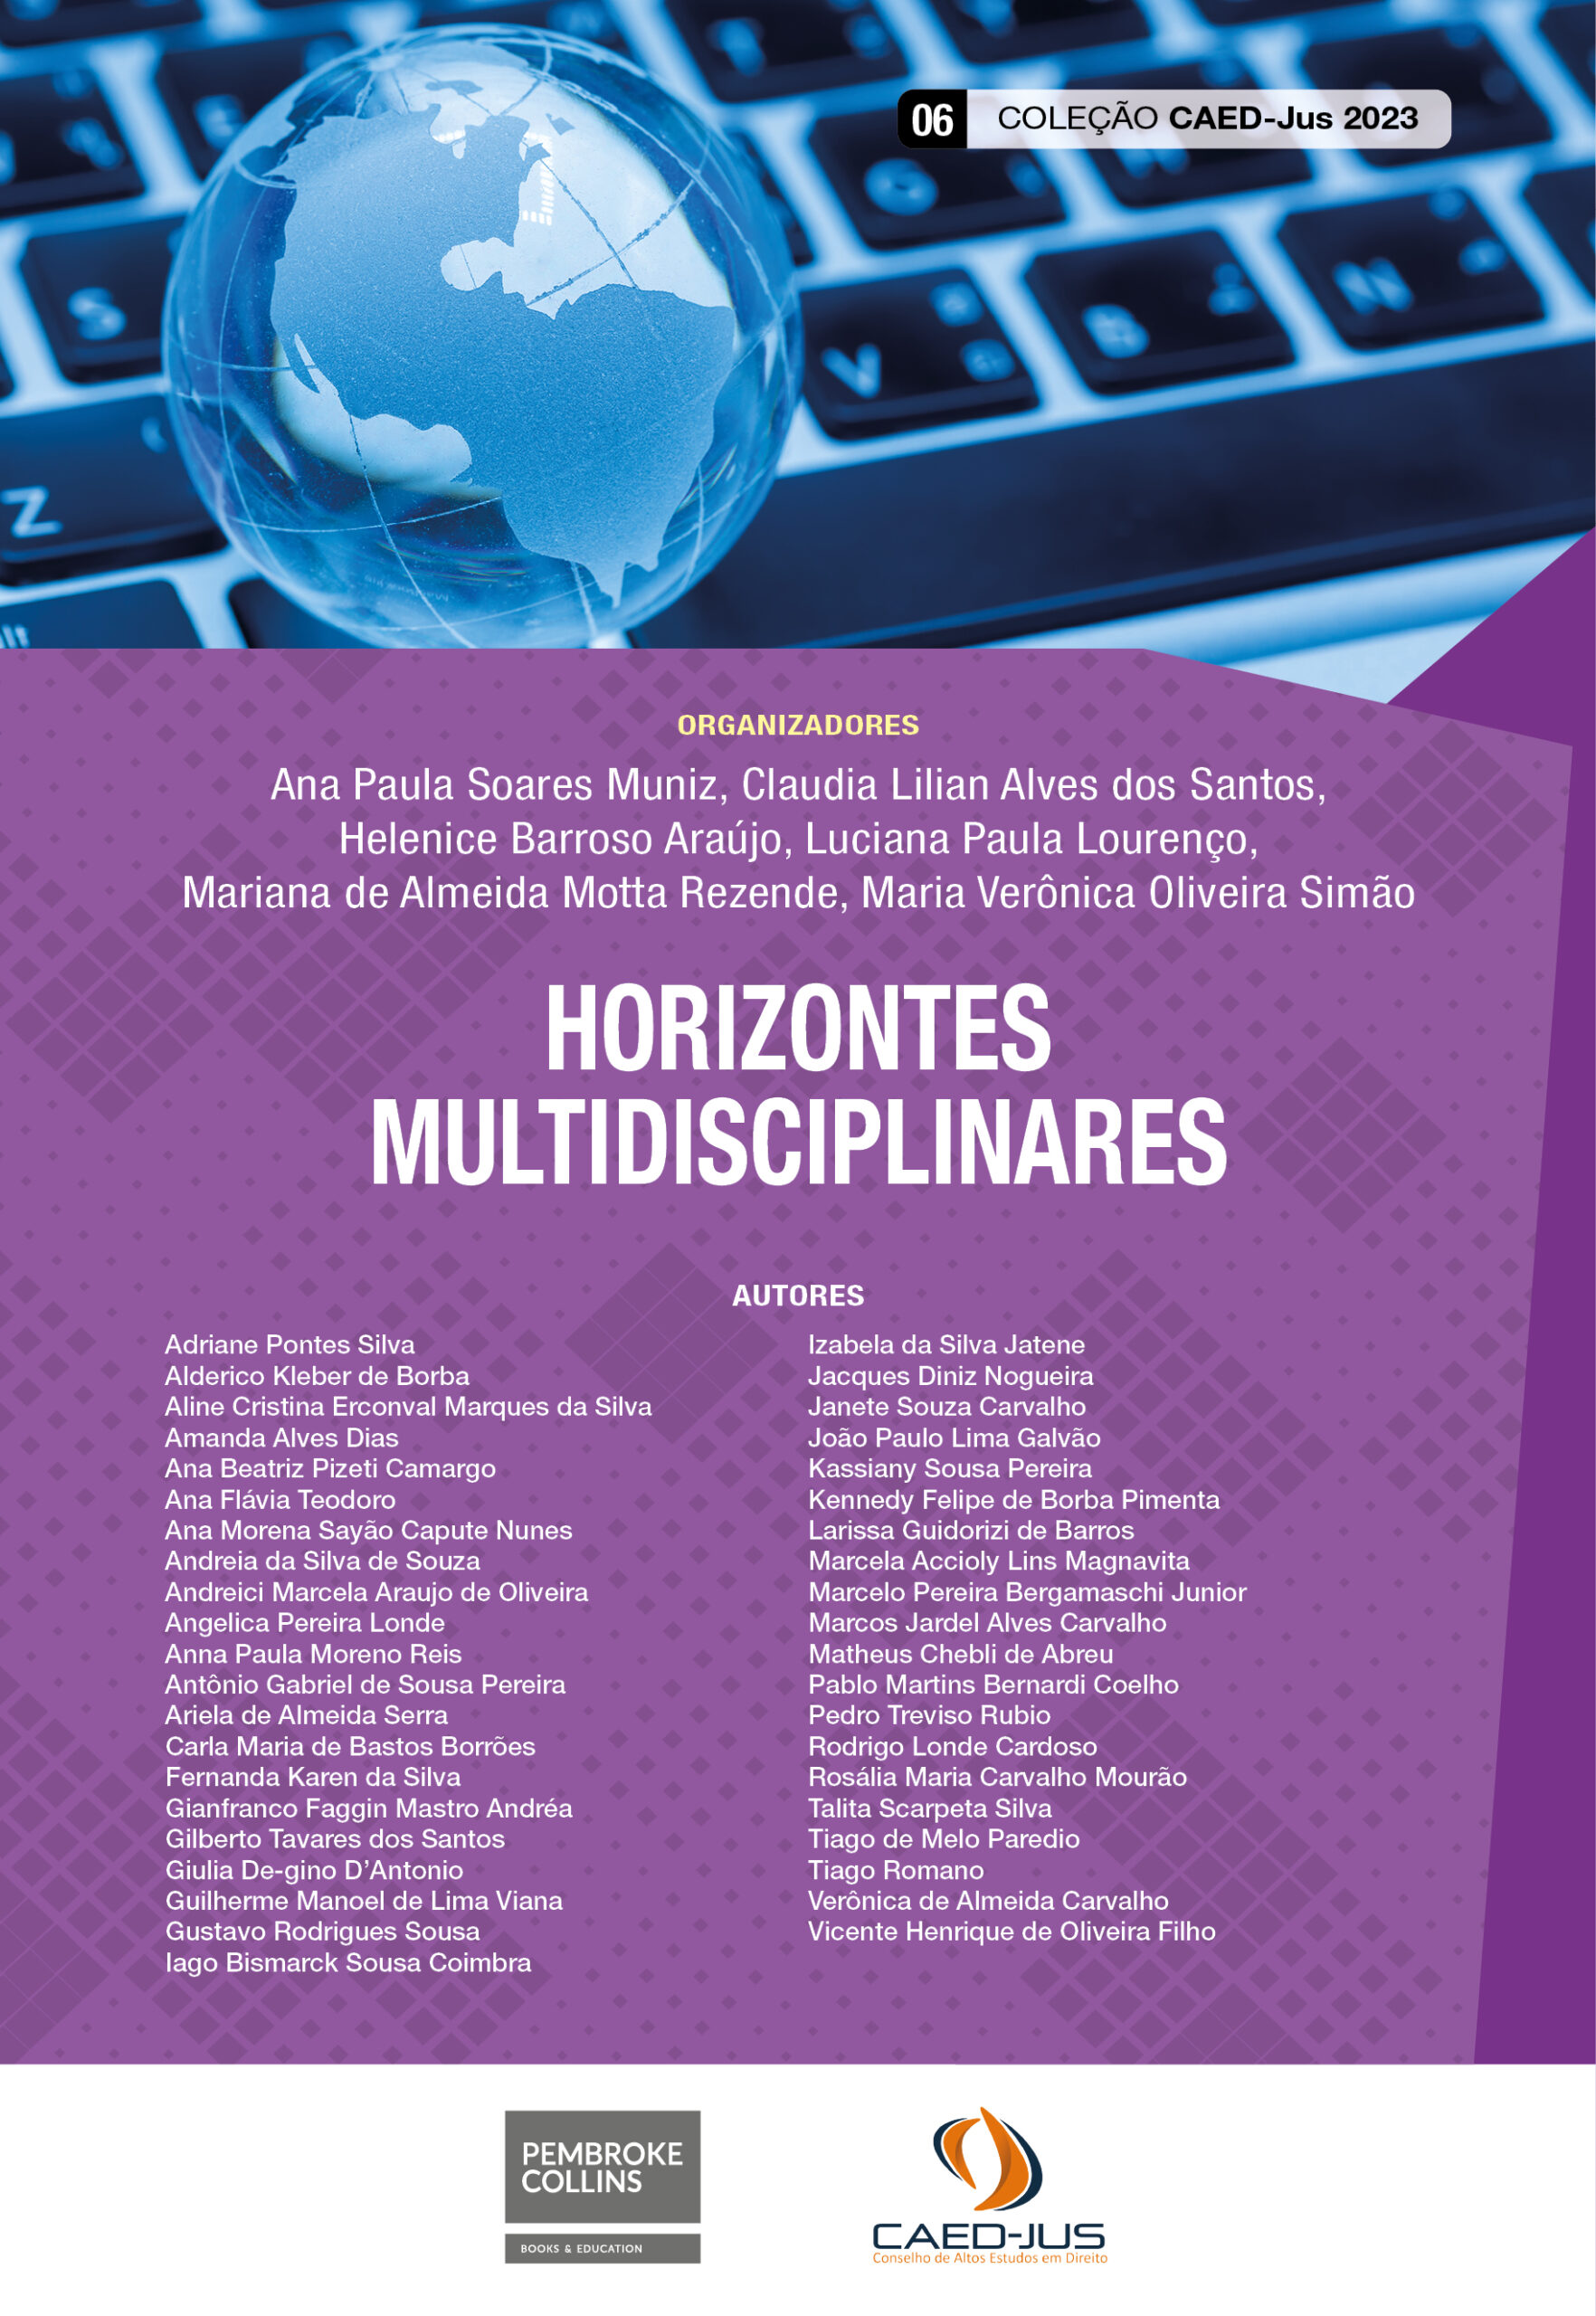 06_CAPA_CAEDJUS 2023_Horizontes Multidisciplinares